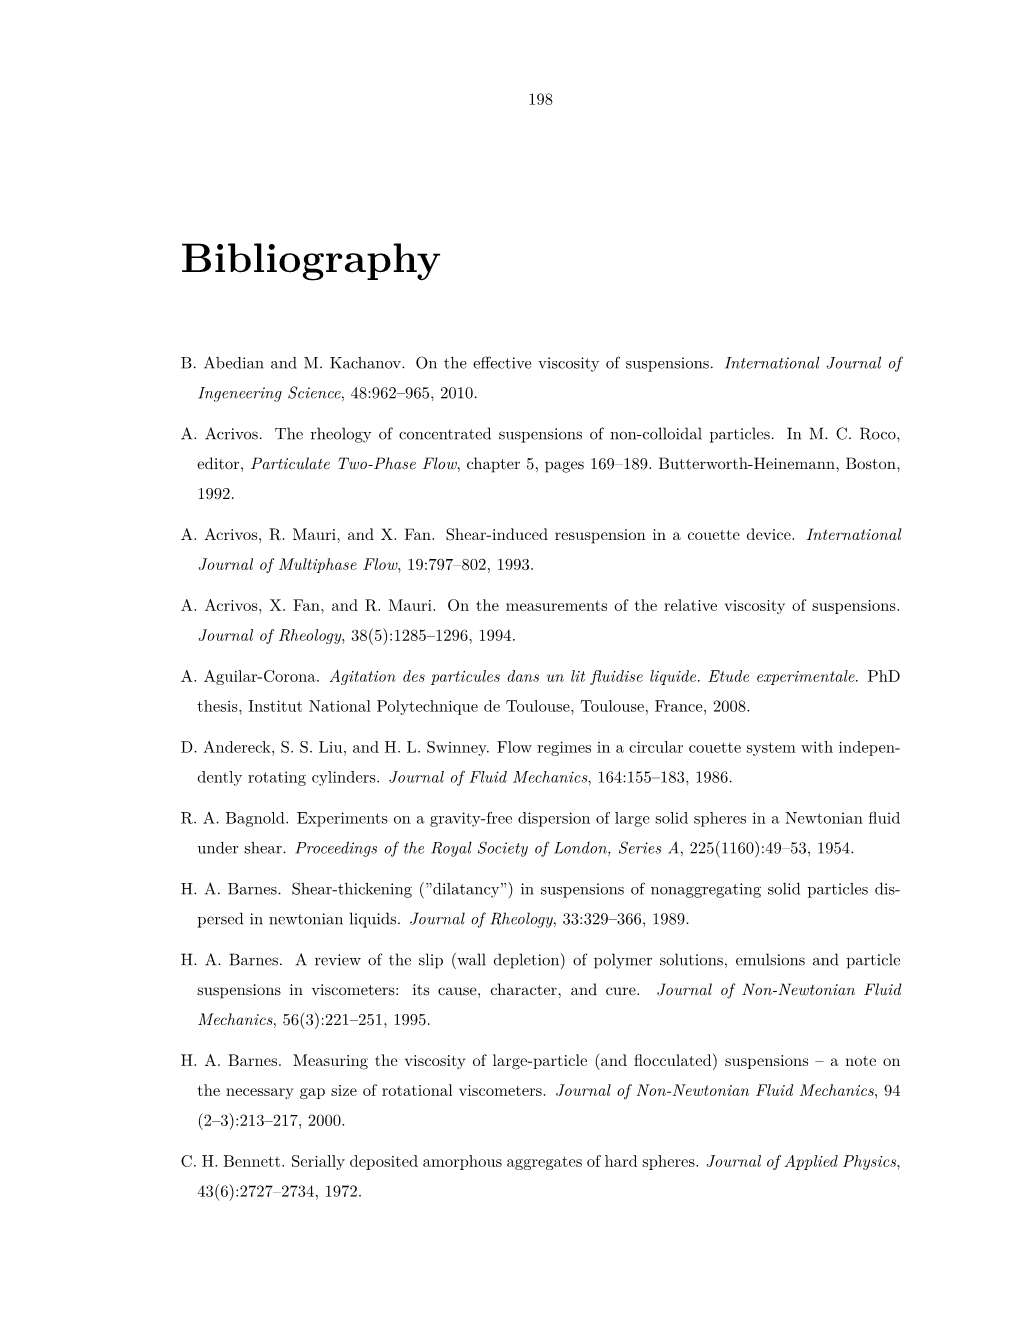 PDF (Bibliography)